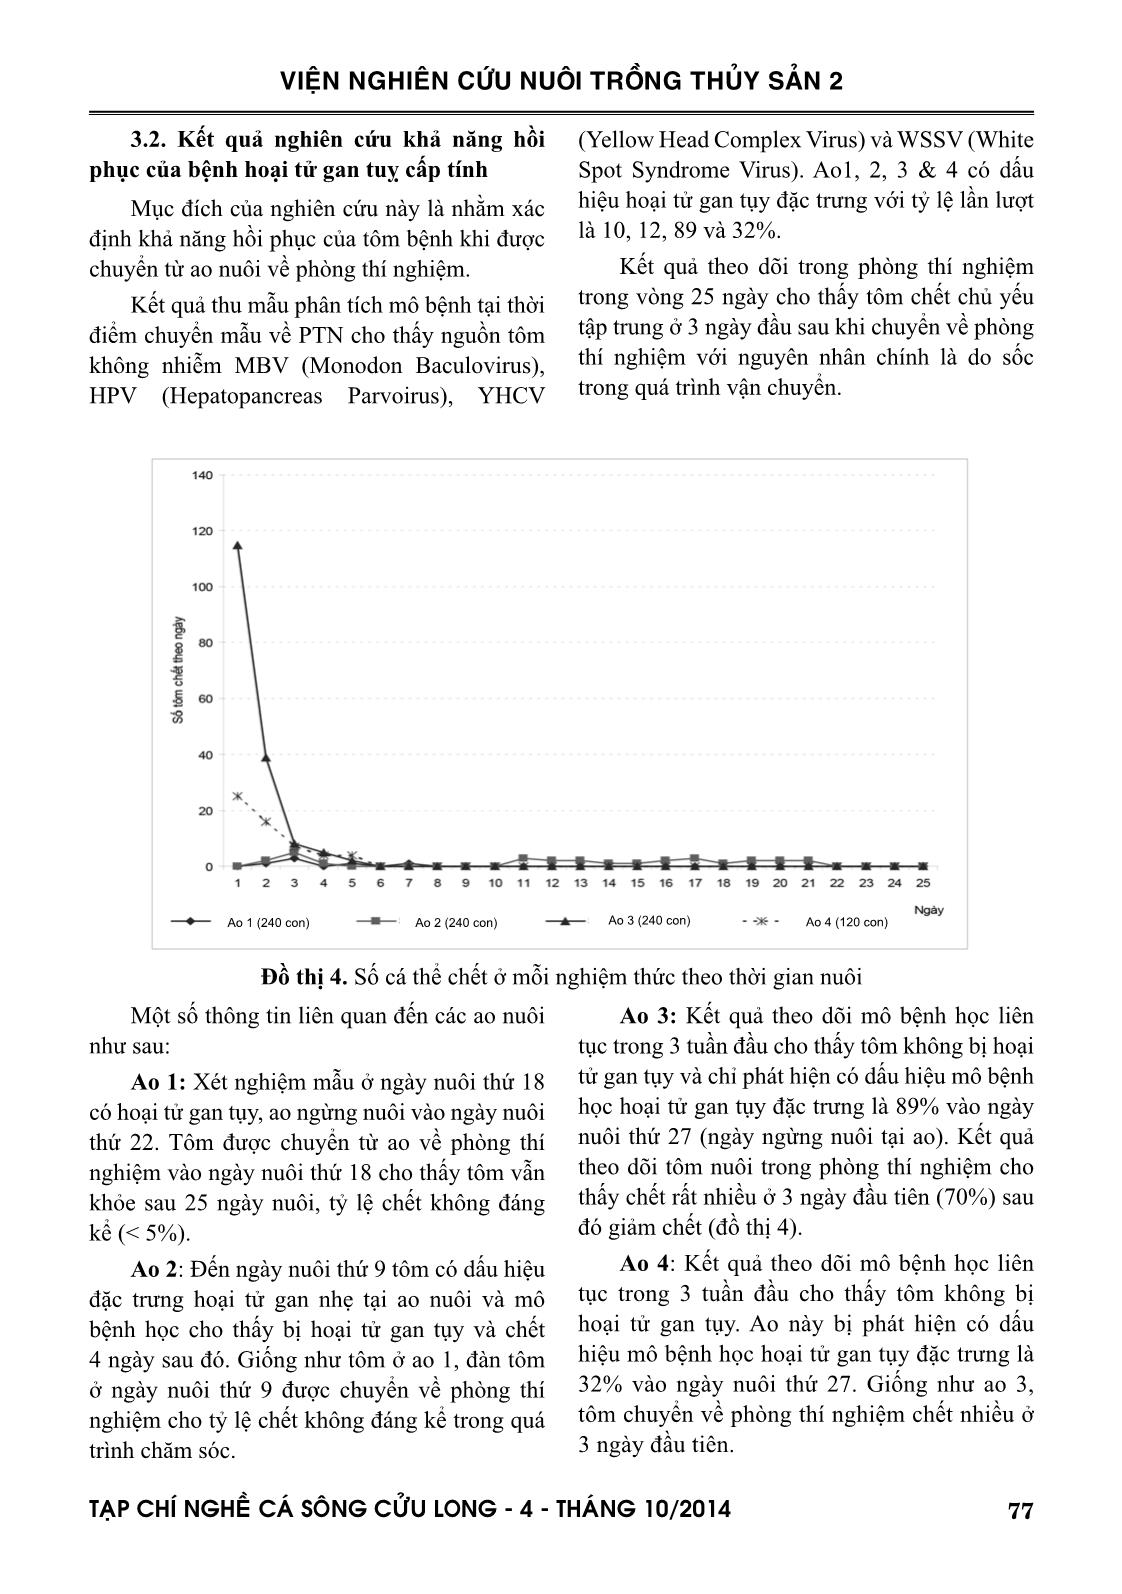 Một số kết quả về nghiên cứu bệnh hoại tử gan tụy cấp tính trên tôm nuôi ở đồng bằng sông Cửu Long và biện pháp kiểm soát trang 5